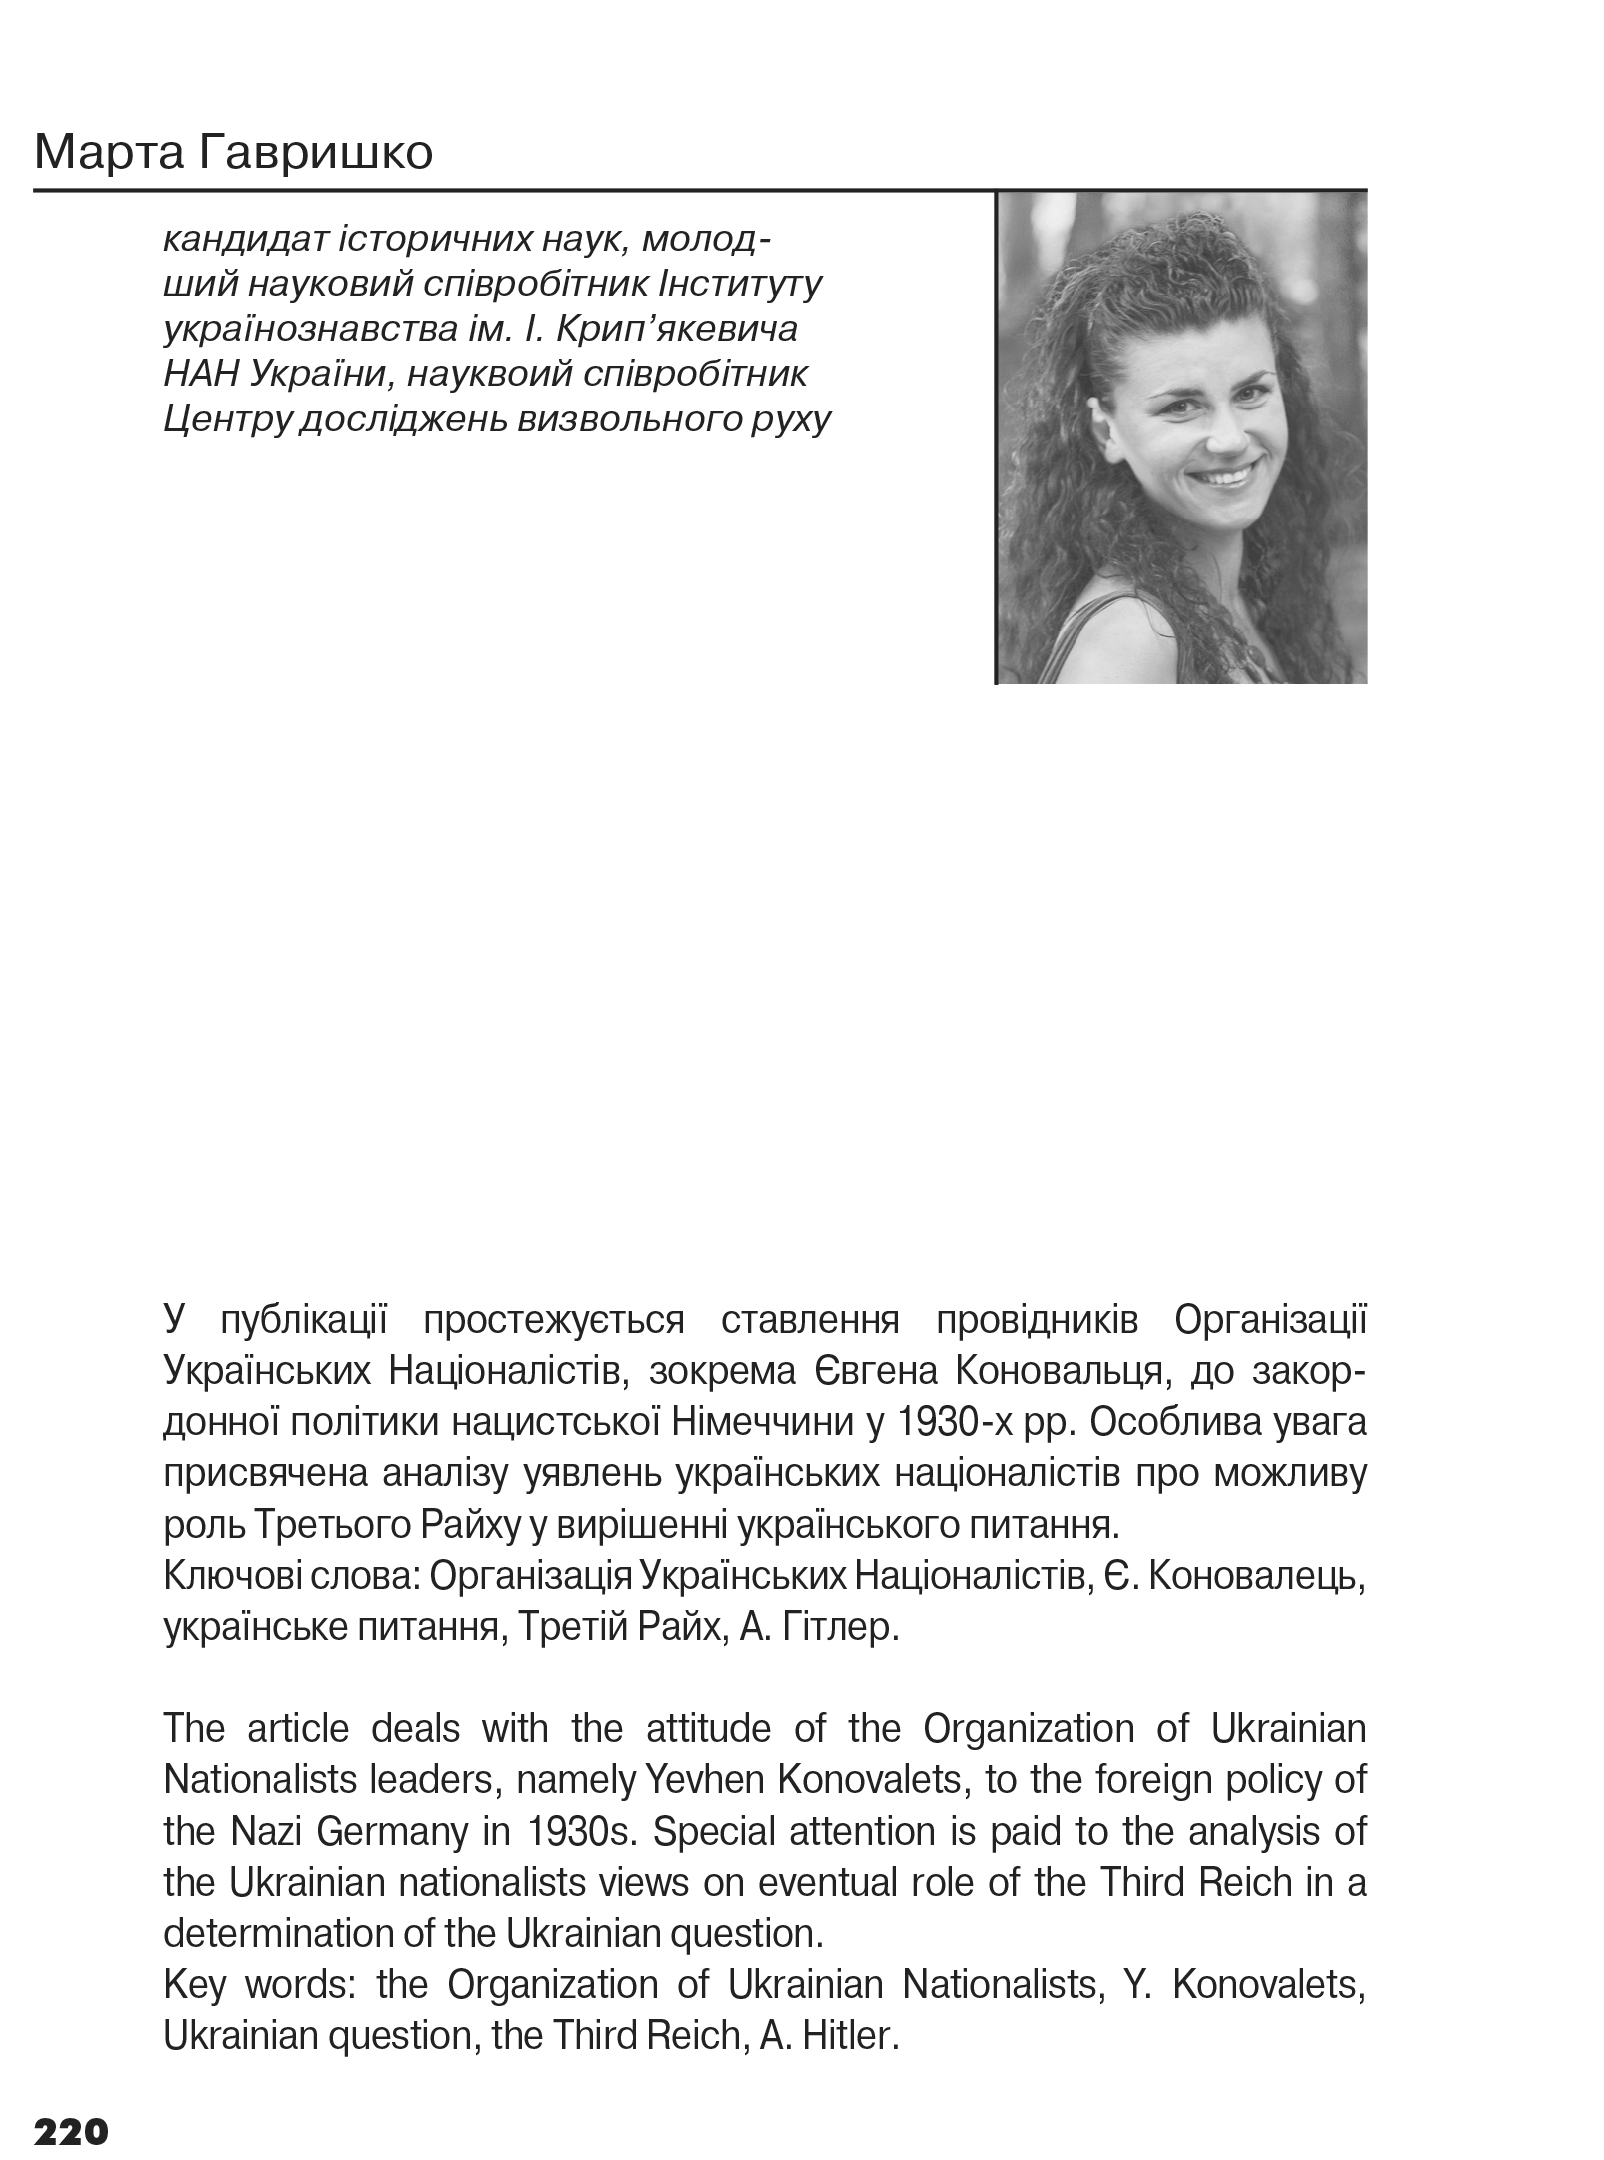 Український визвольний рух №16, ст. 220 - 239